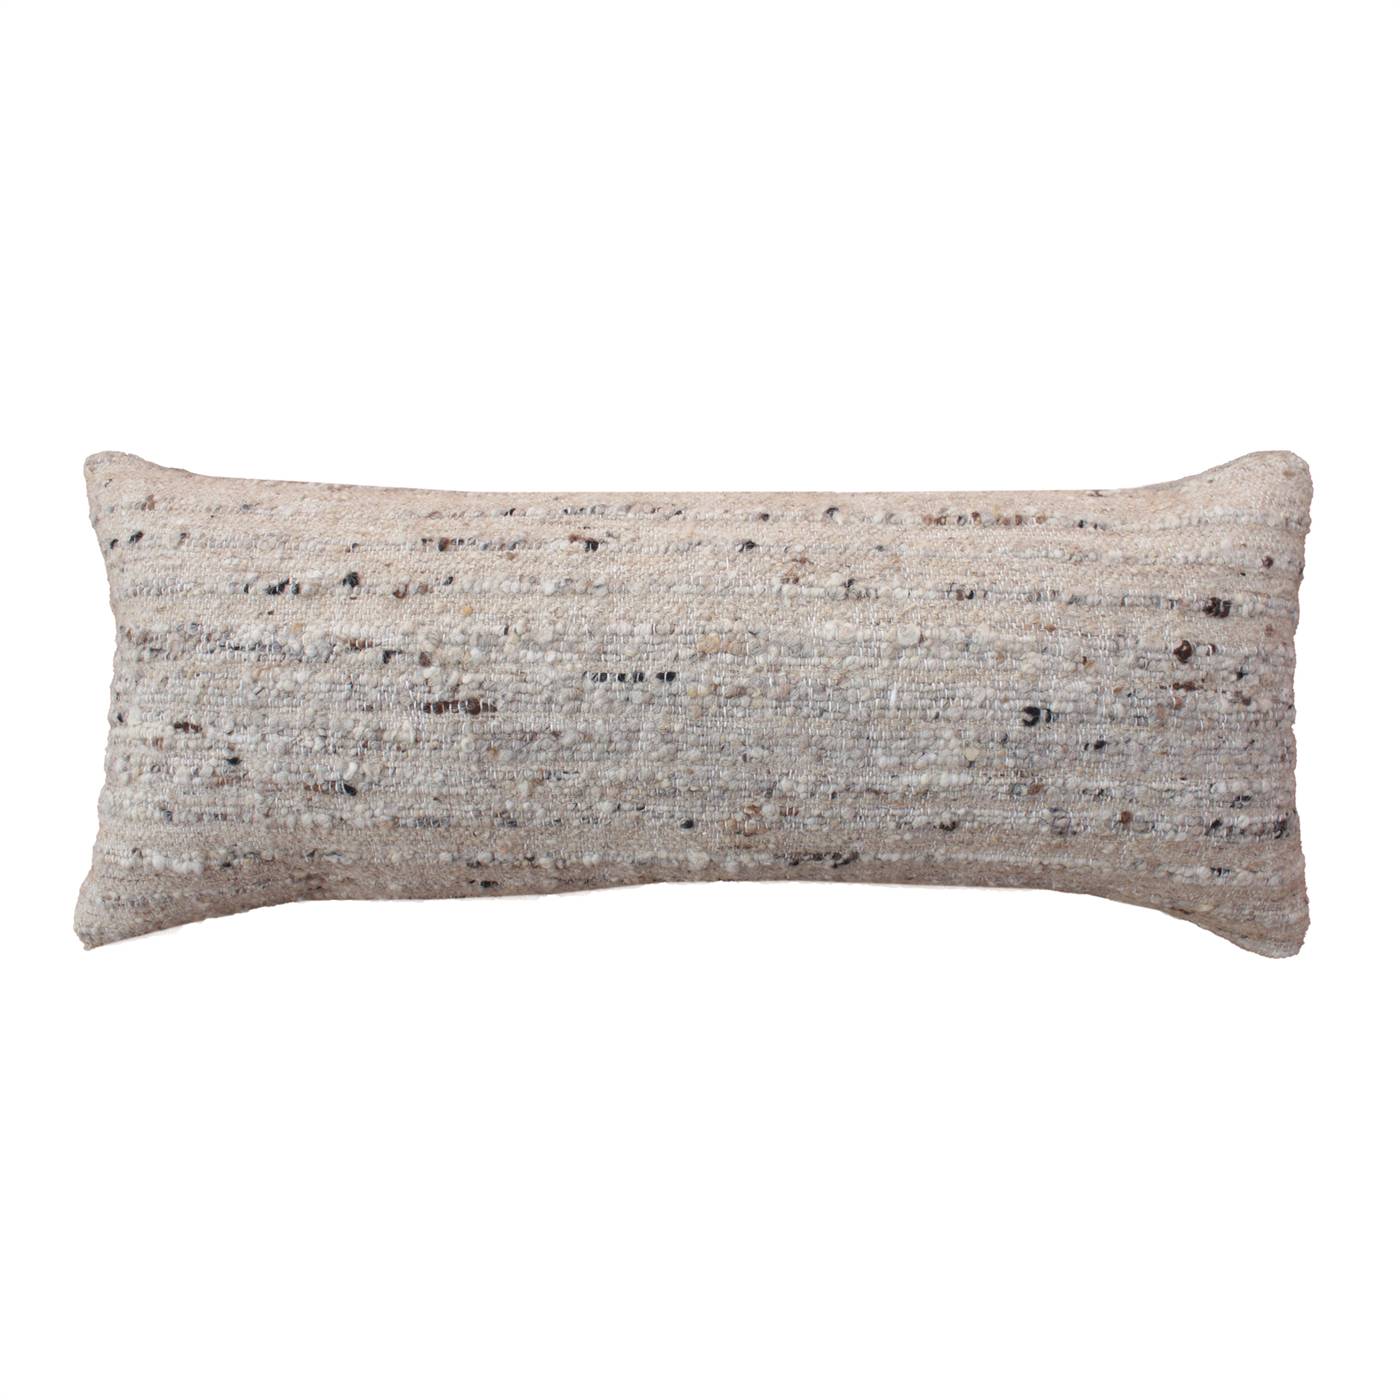 Crane Lumber Cushion, 36x91 cm, Beige, Wool, Punja Kelim, Punja, Flat Weave